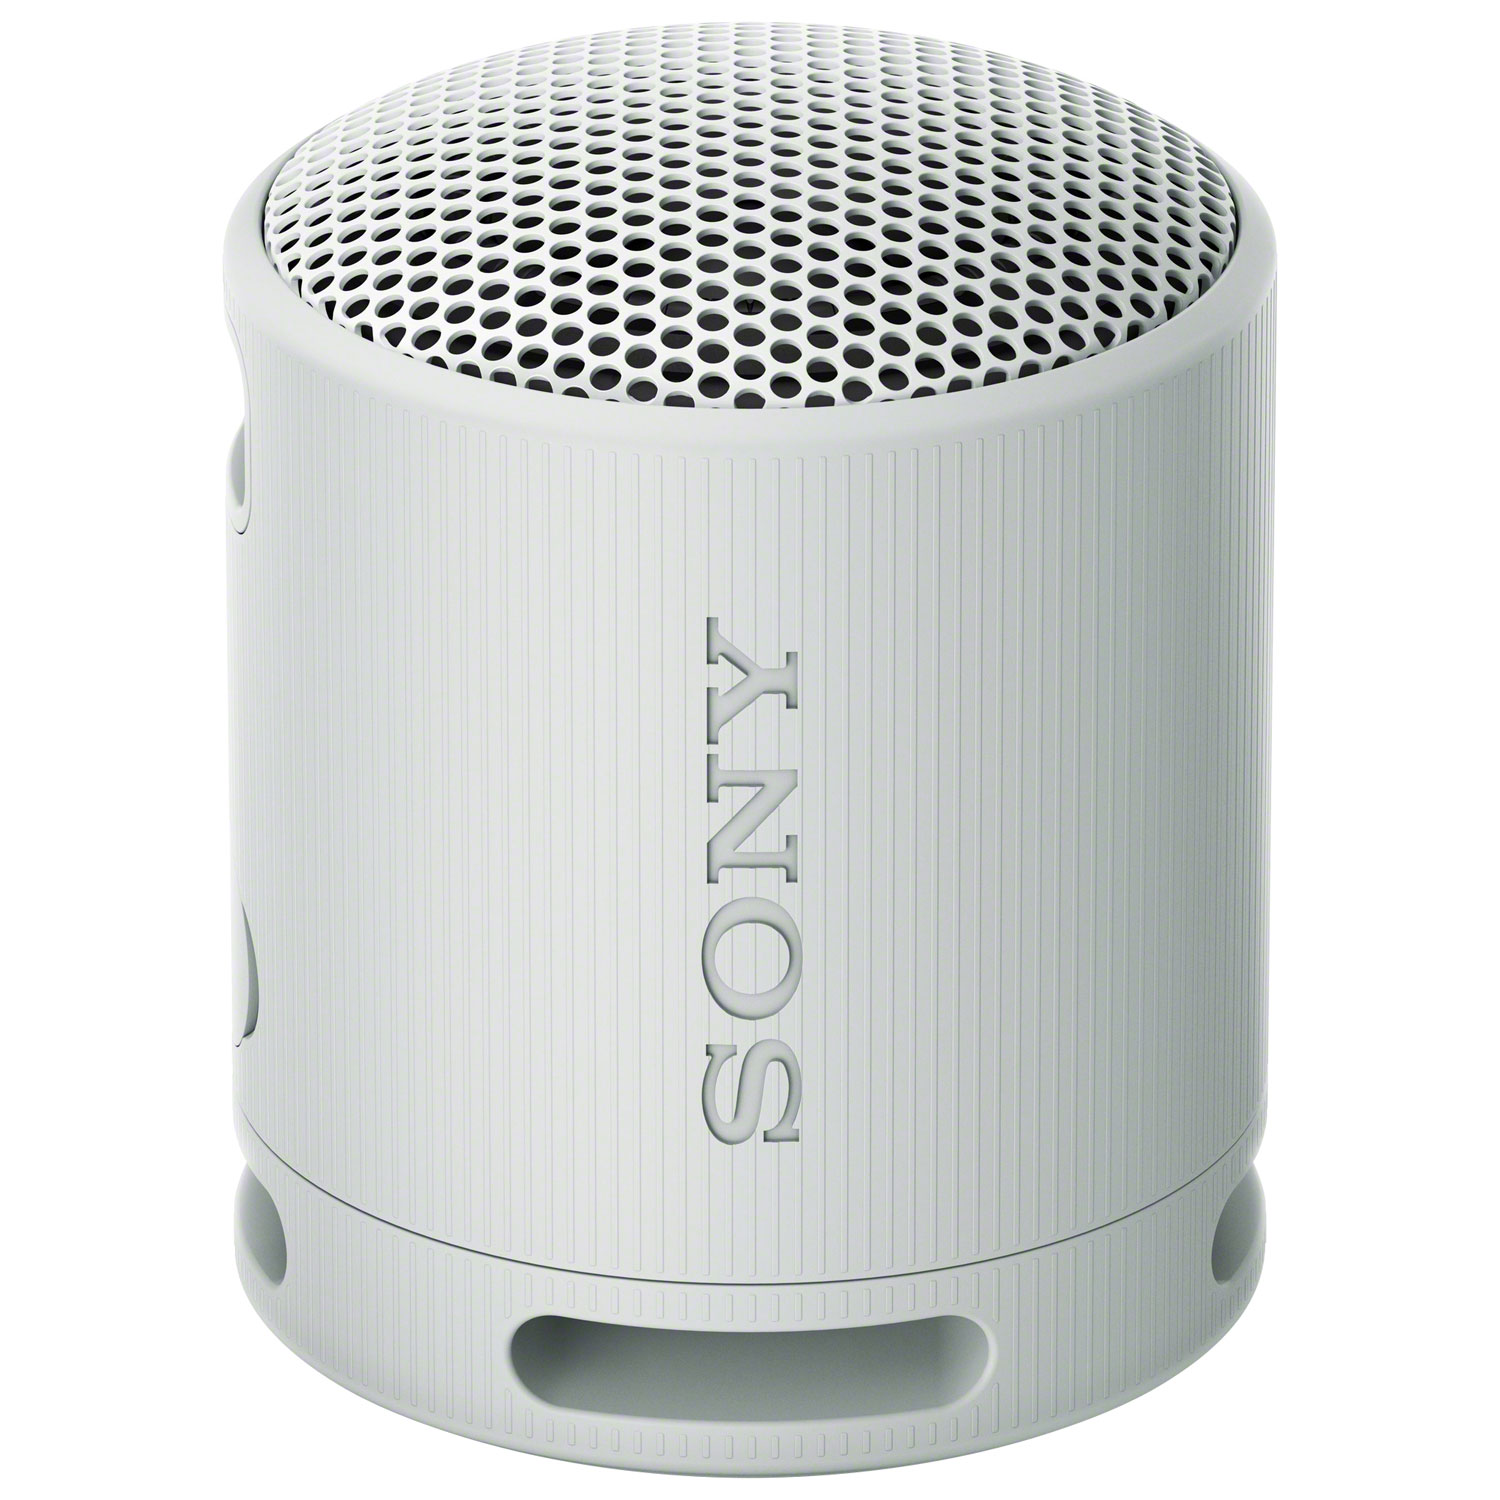 Sony SRS-XB100 Waterproof Bluetooth Wireless Speaker - Light Grey